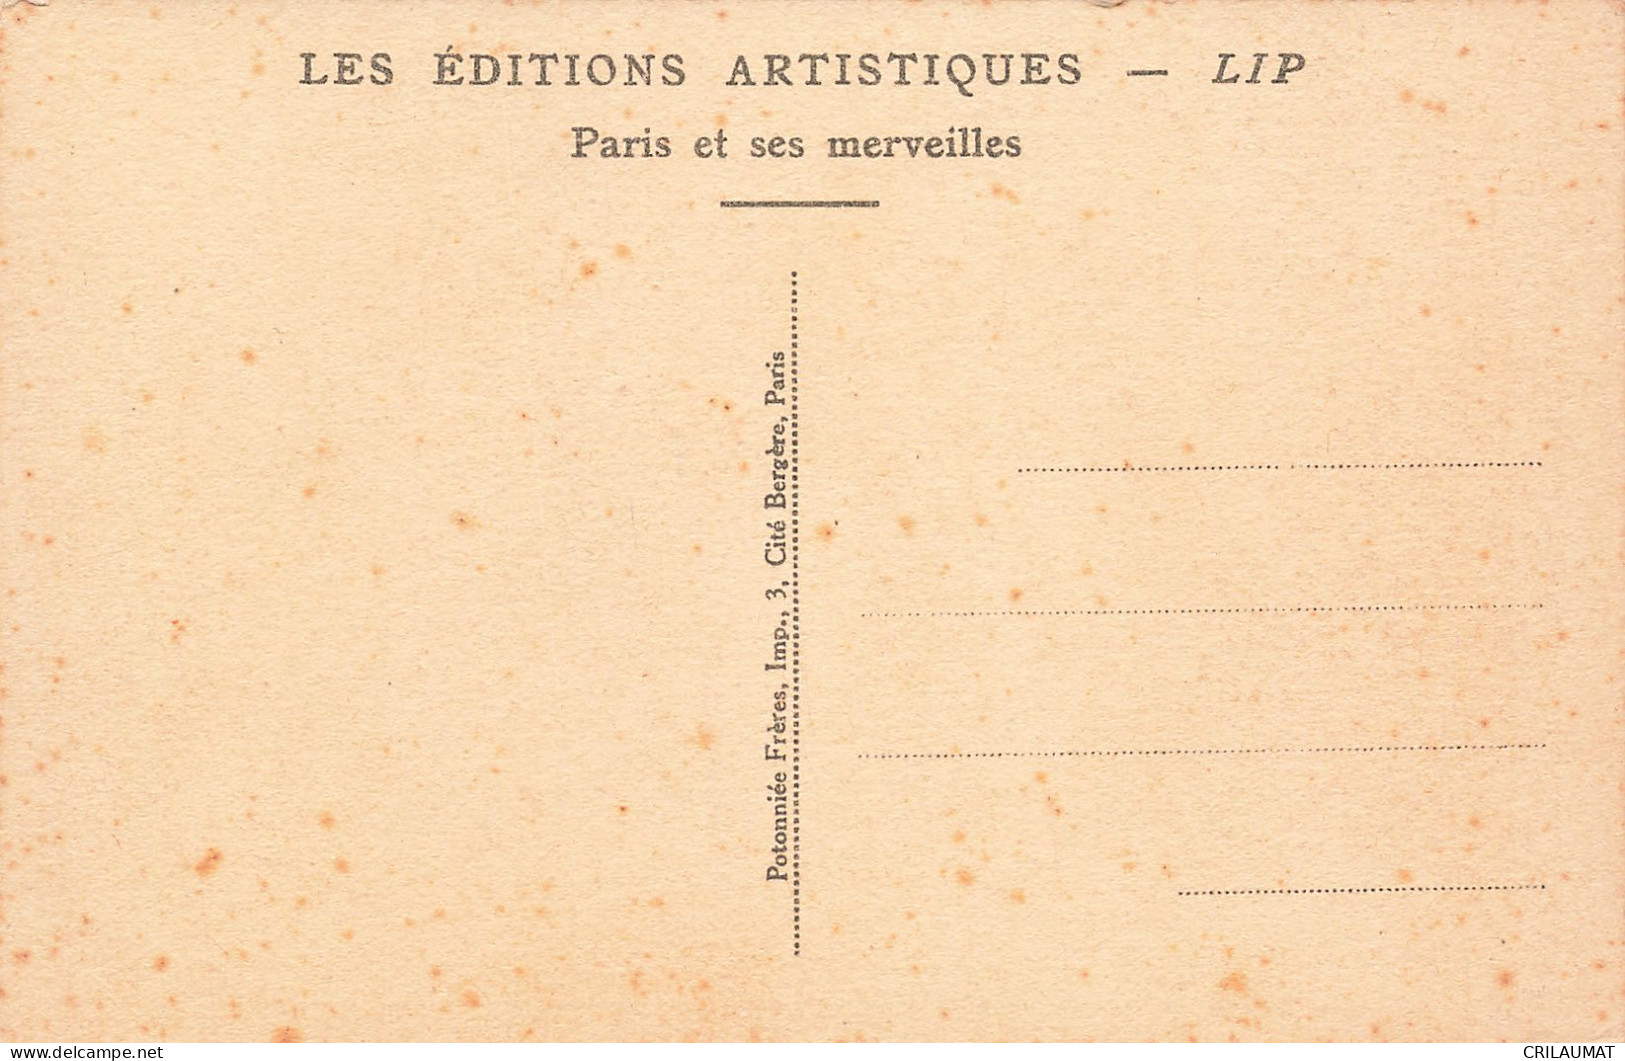 75-PARIS-L ARC DE TRIOMPHE DU CARROUSEL-N°T5308-D/0135 - Arc De Triomphe